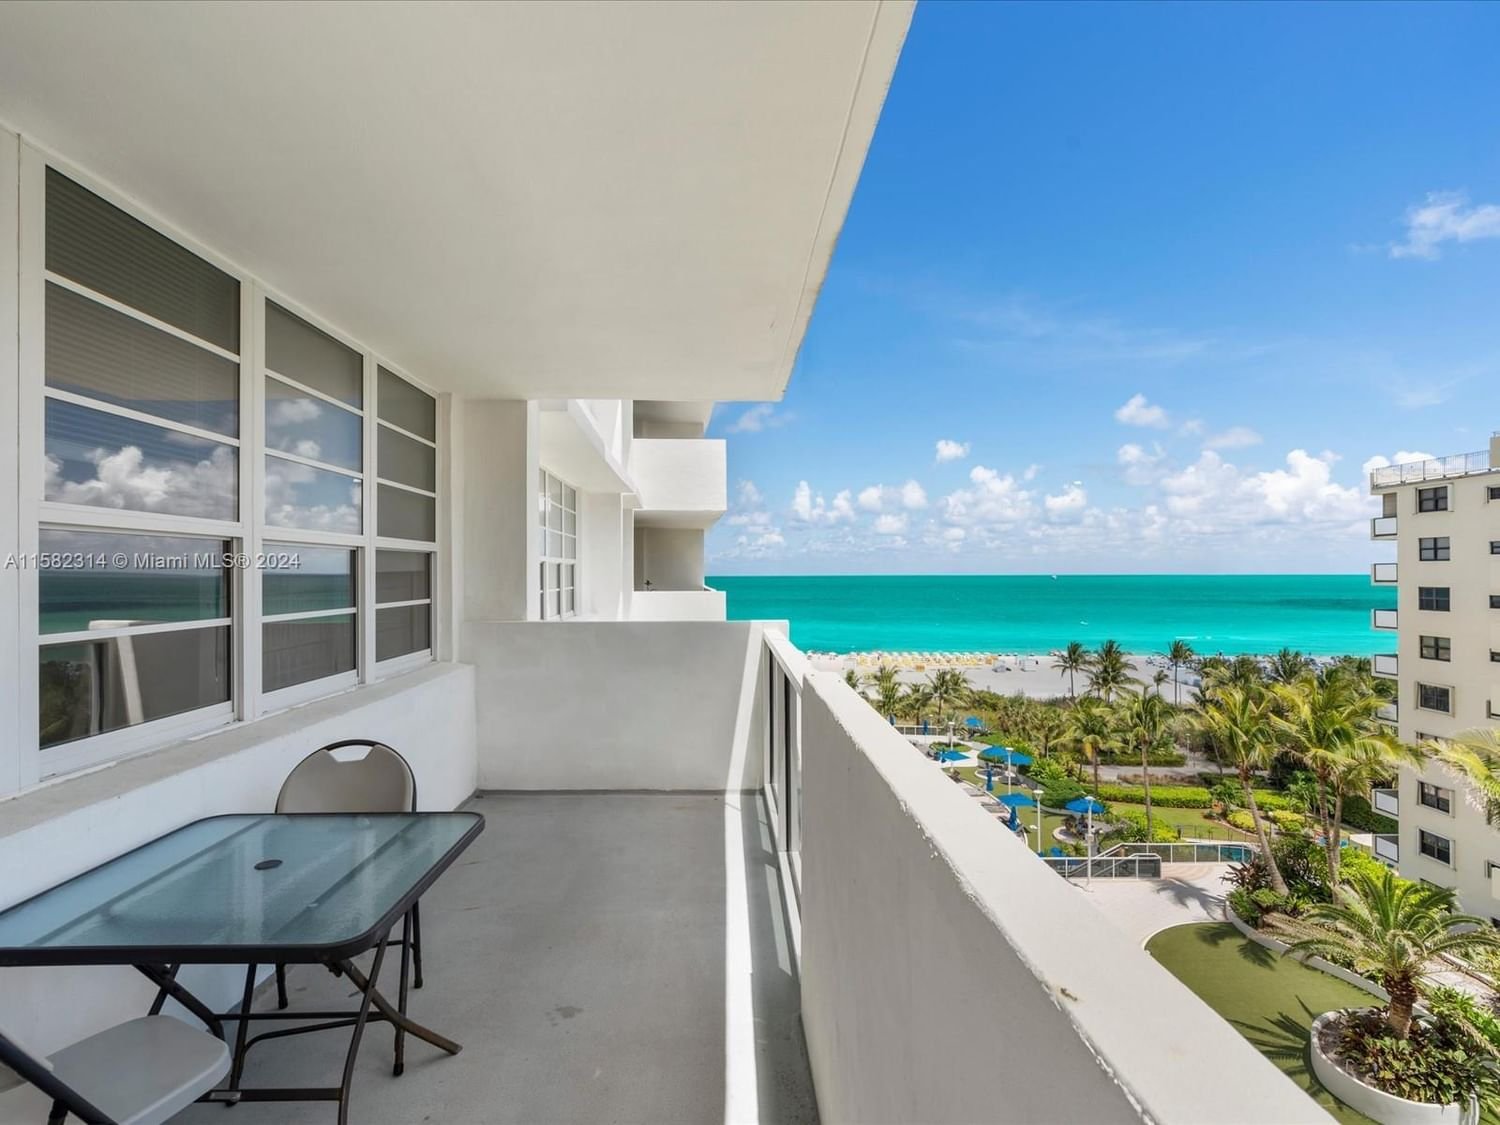 Real estate property located at 100 Lincoln Rd #830, Miami-Dade County, THE DECOPLAGE CONDO, Miami Beach, FL